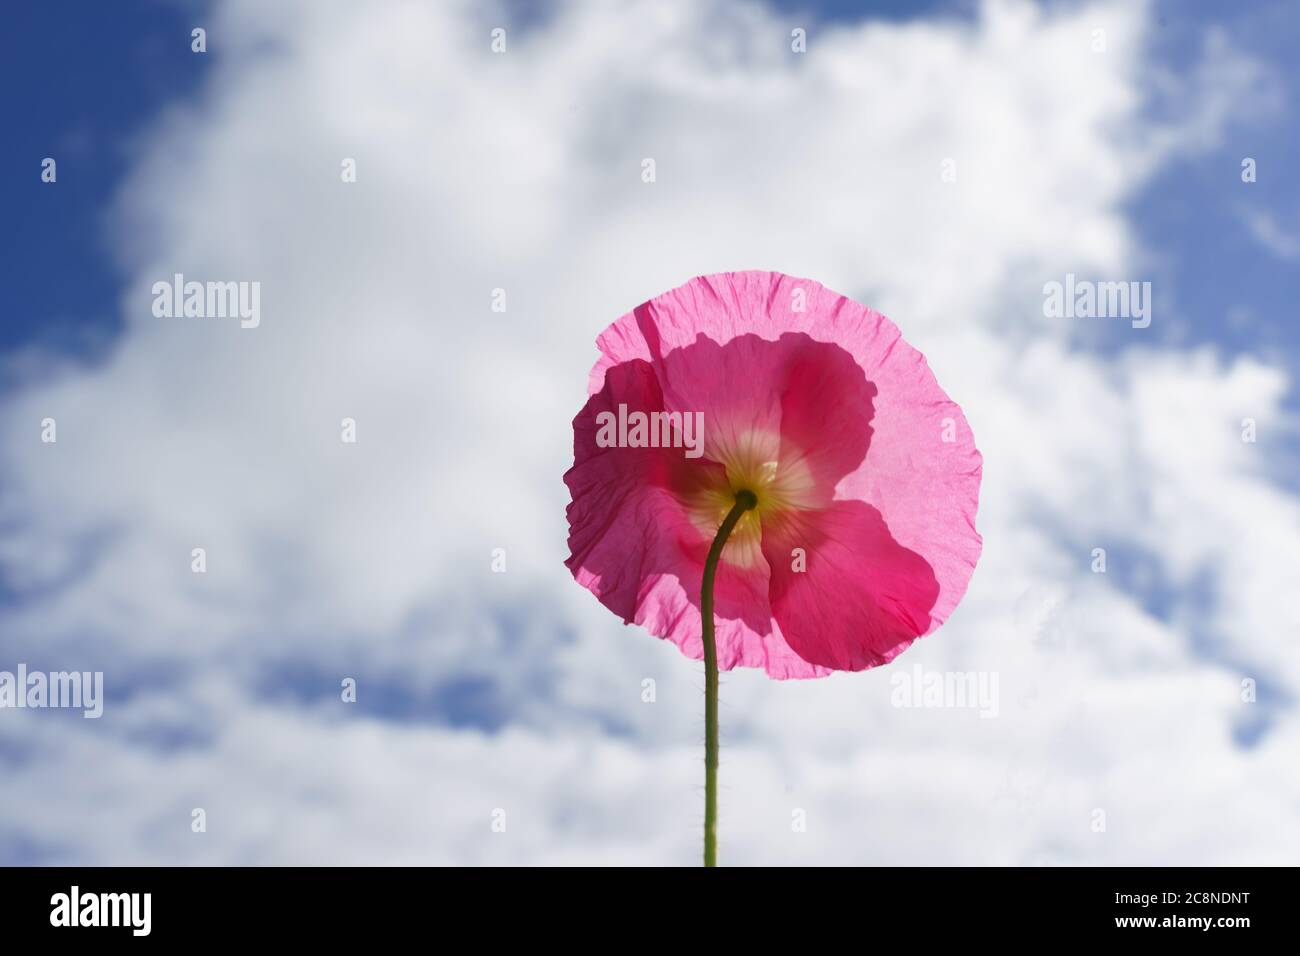 Au-dessous d'un coquelicot rose vif pointant vers des nuages blancs et un ciel bleu. Banque D'Images